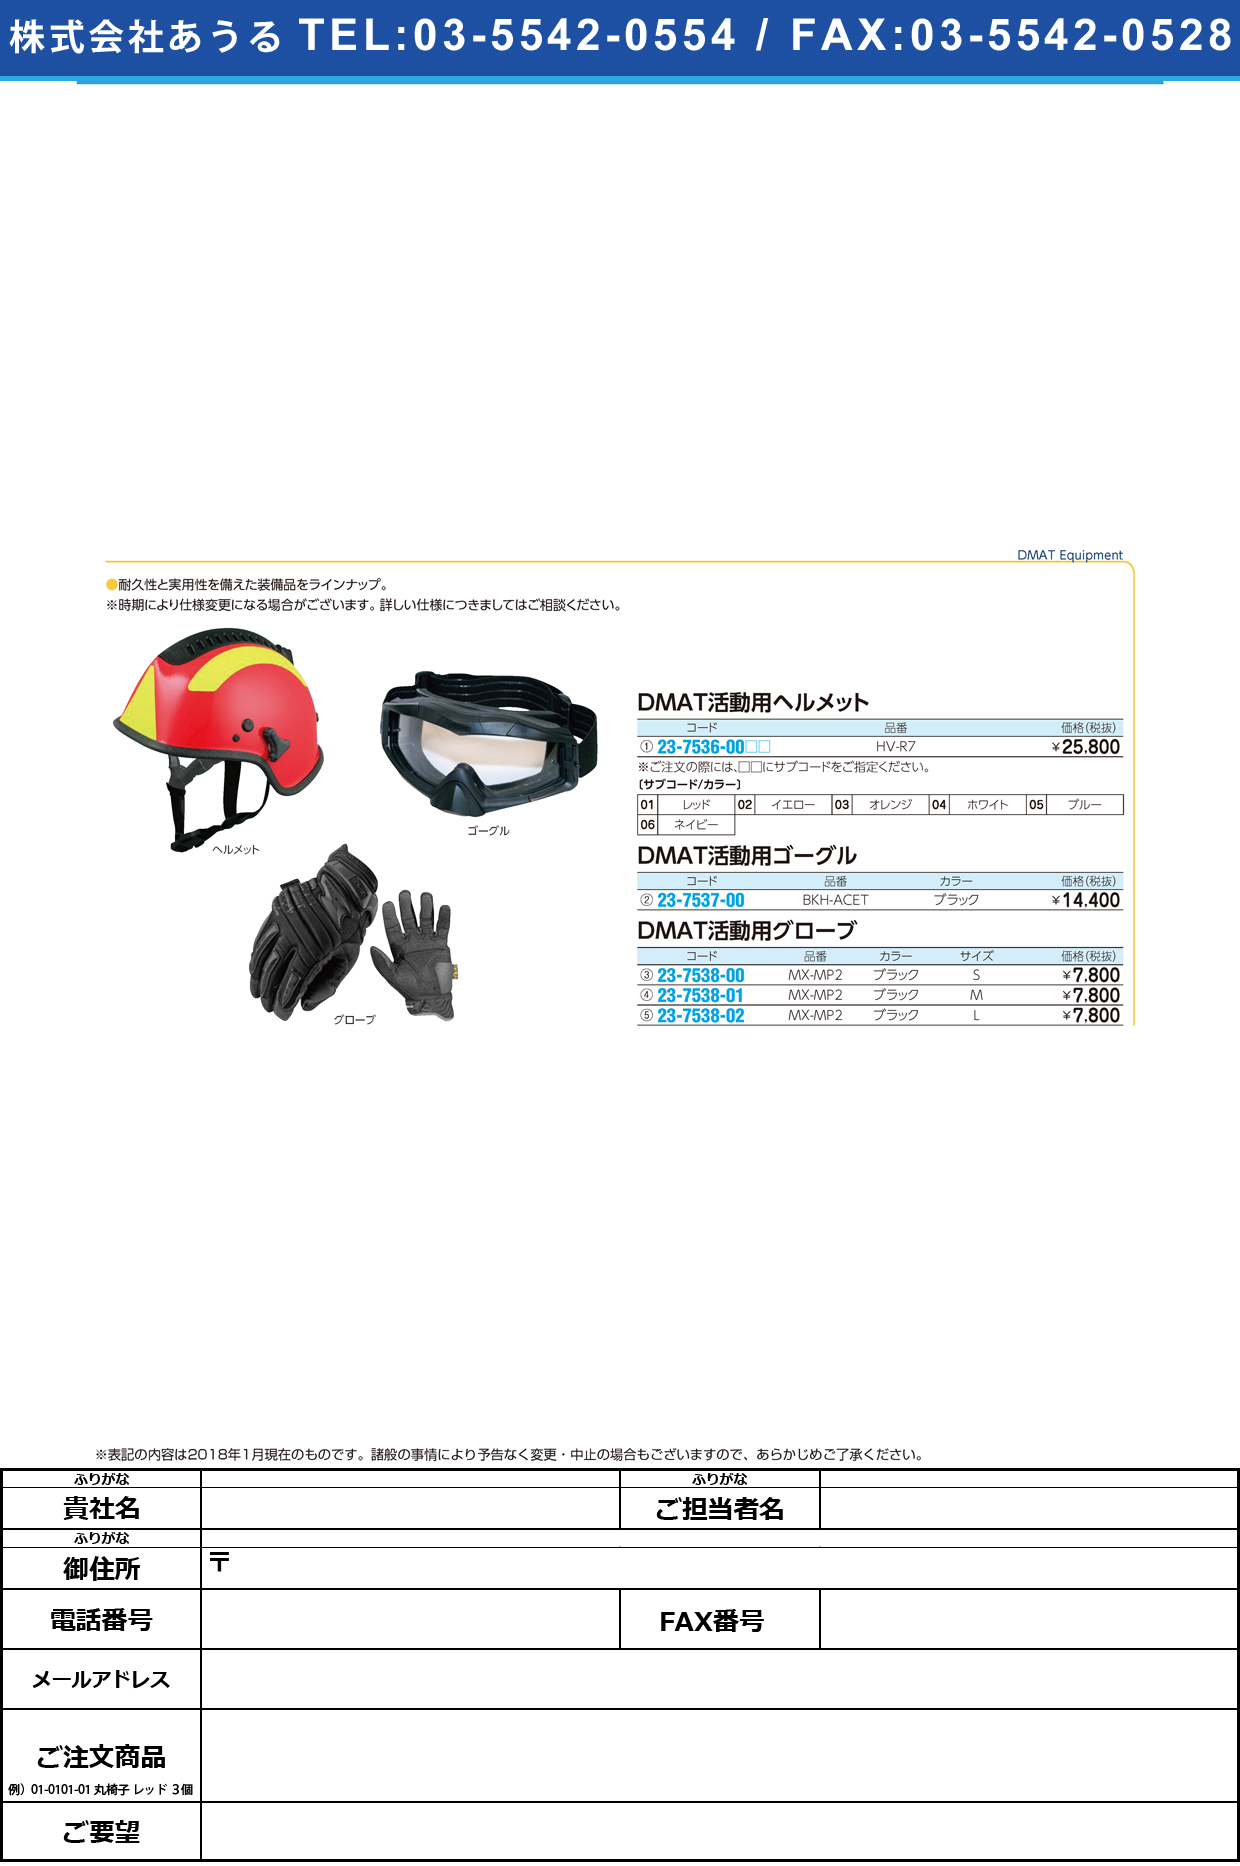 (23-7536-00)ＤＭＡＴ活動用ヘルメット HV-R7 DMATｶﾂﾄﾞｳﾖｳﾍﾙﾒｯﾄ ホワイト【1個単位】【2018年カタログ商品】